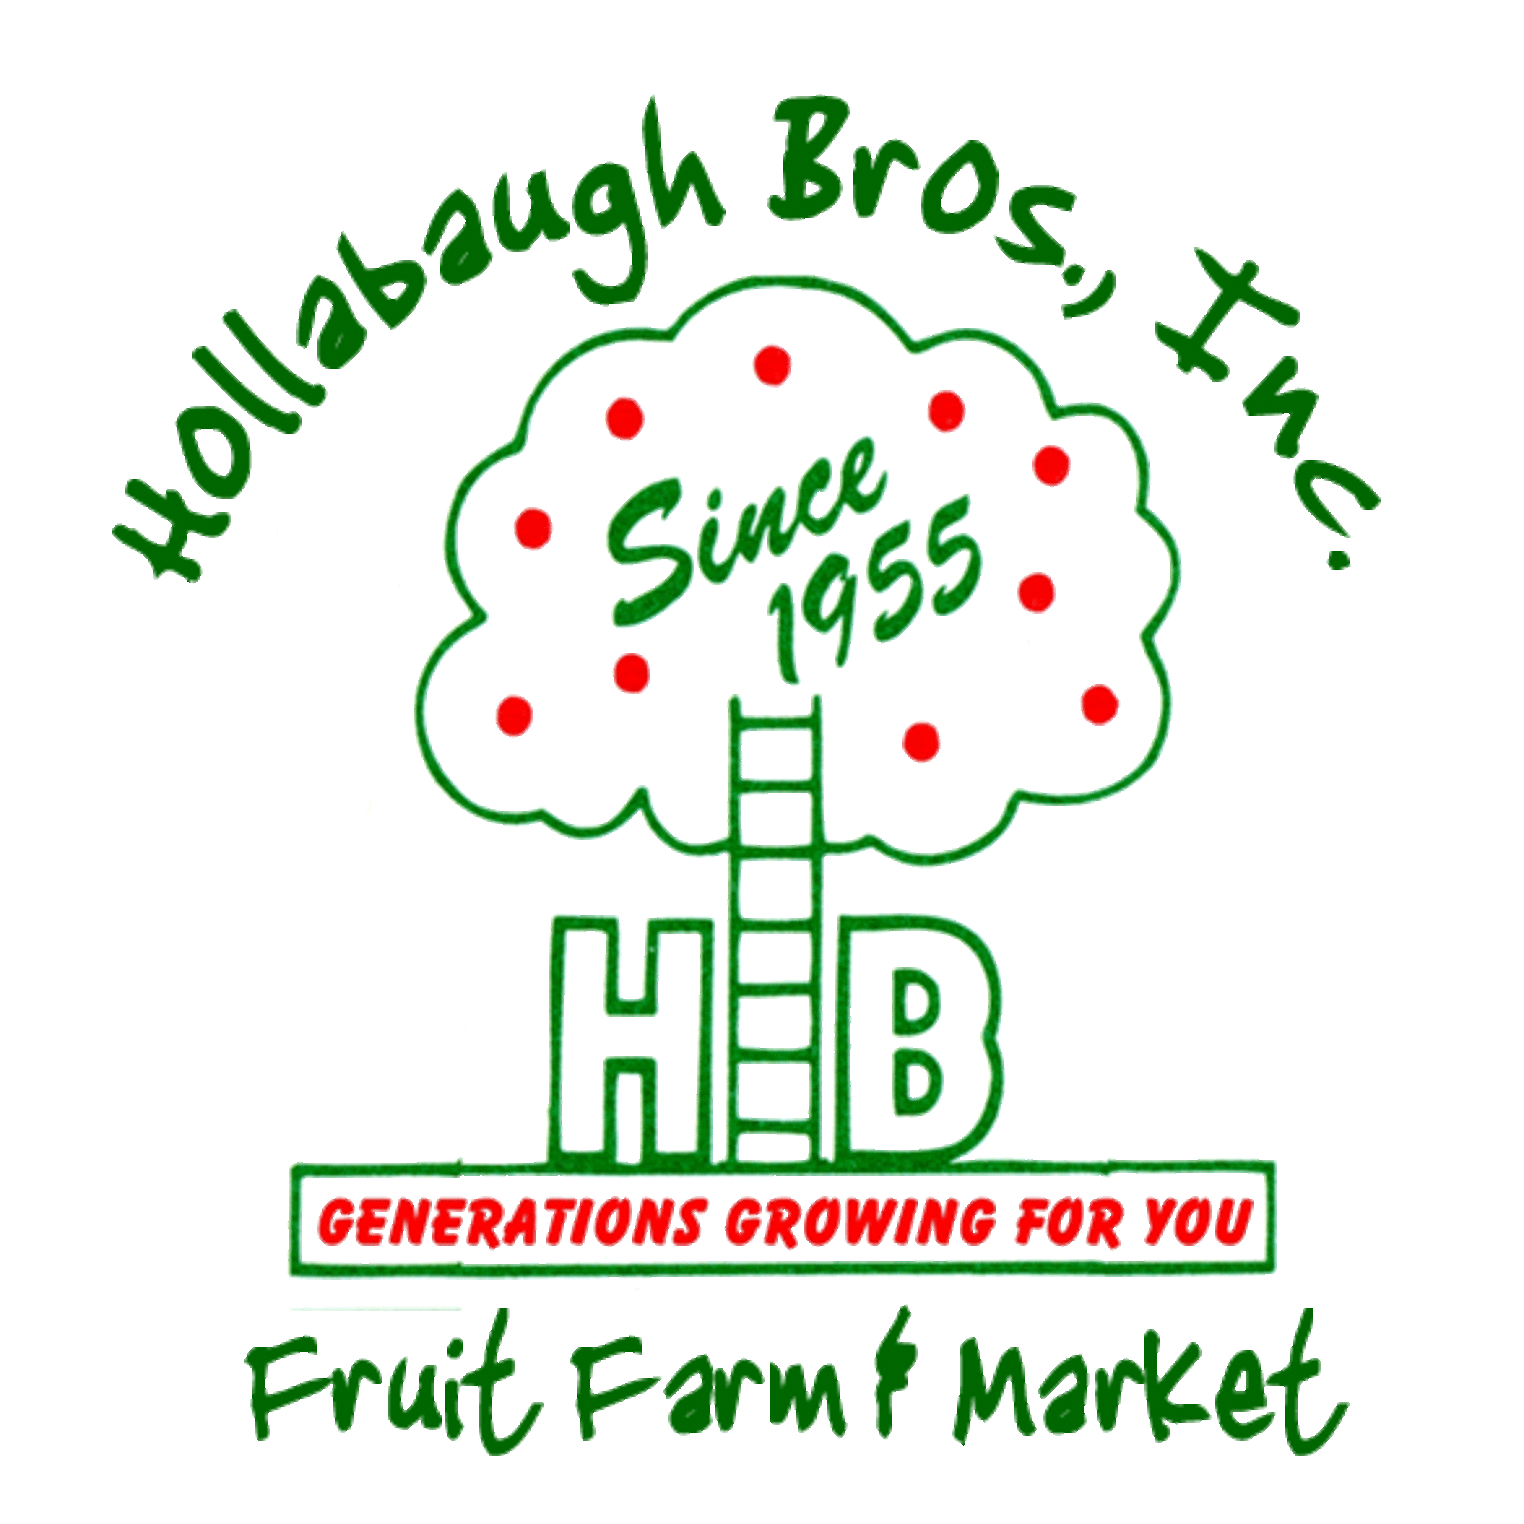 Hollabaugh Bros., Inc.